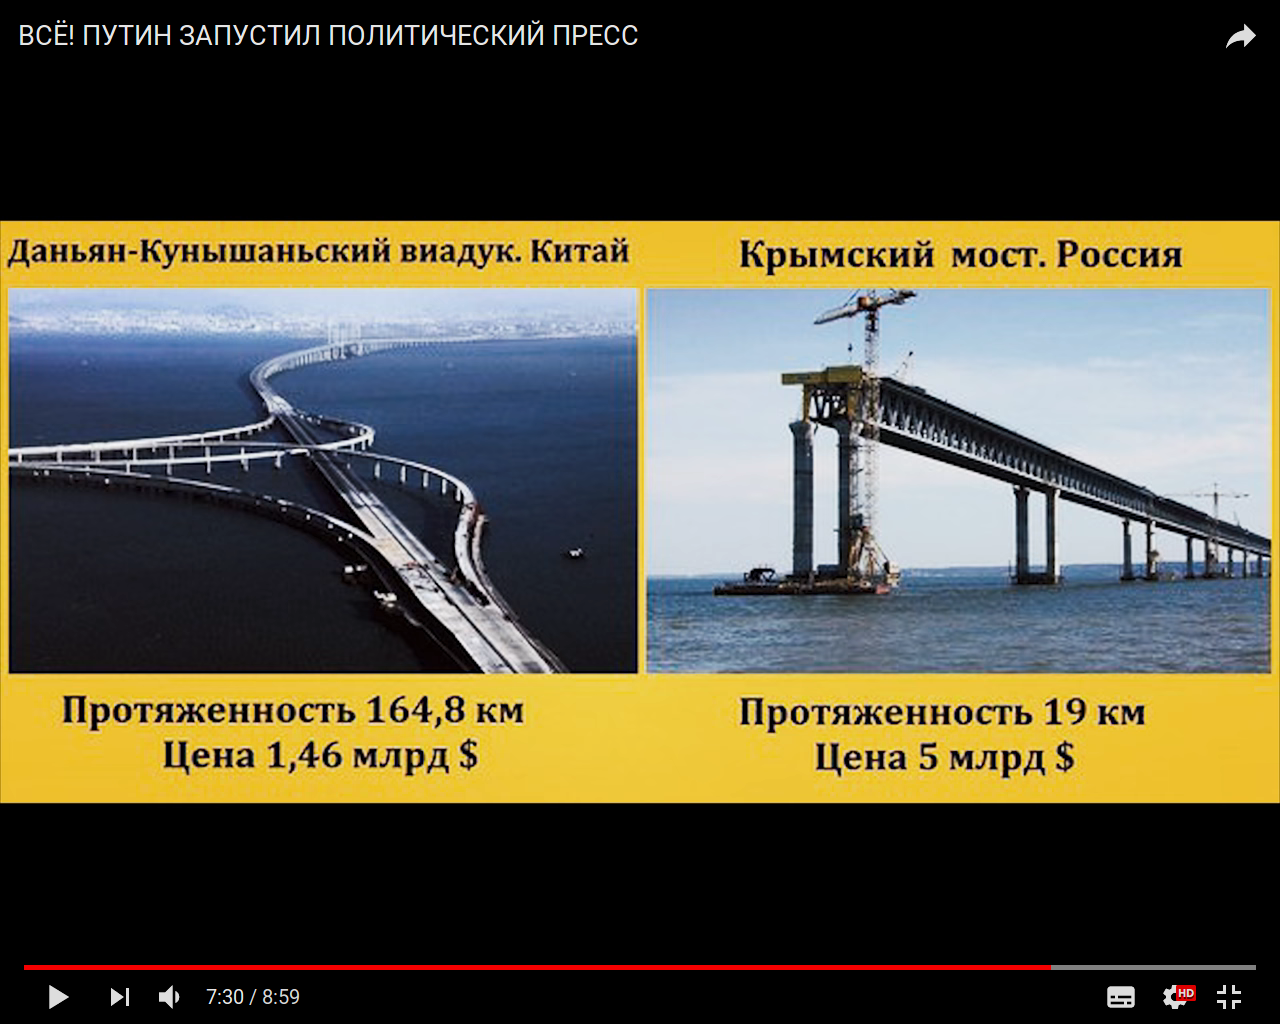 Китай и Крымский мост